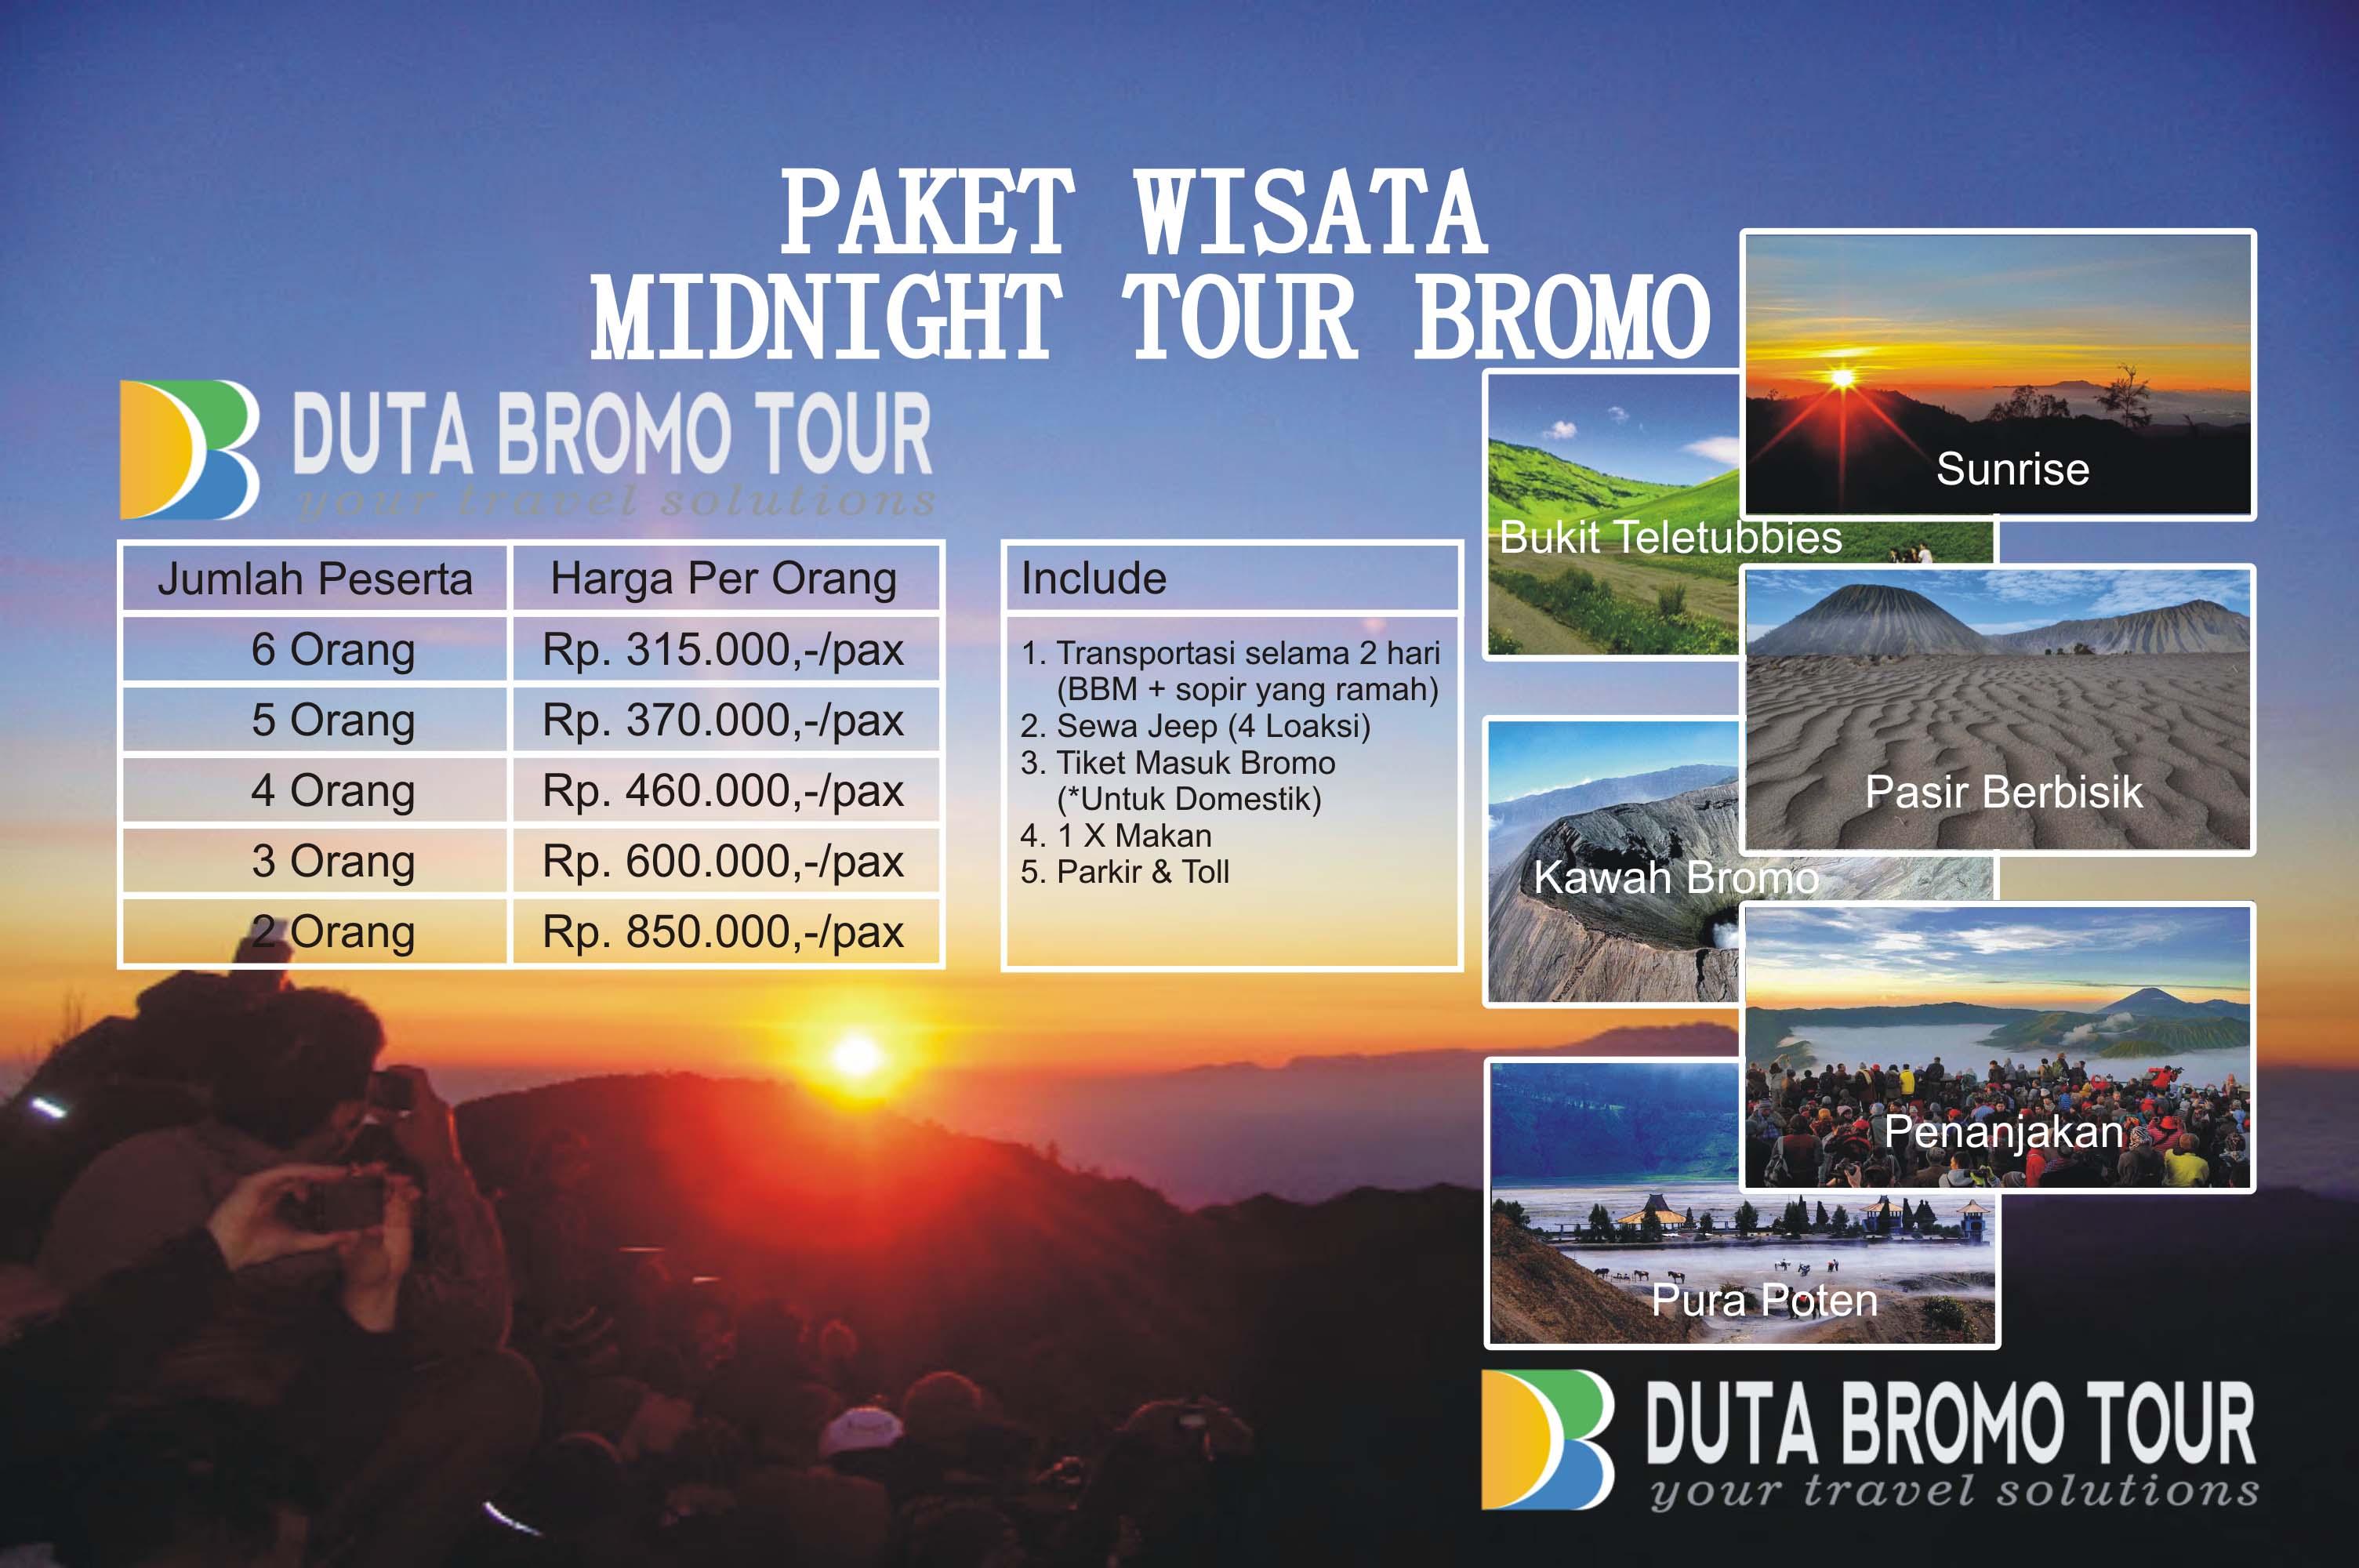 Duta Bromo Tour » Paket Wisata Midnight Tour Bromo